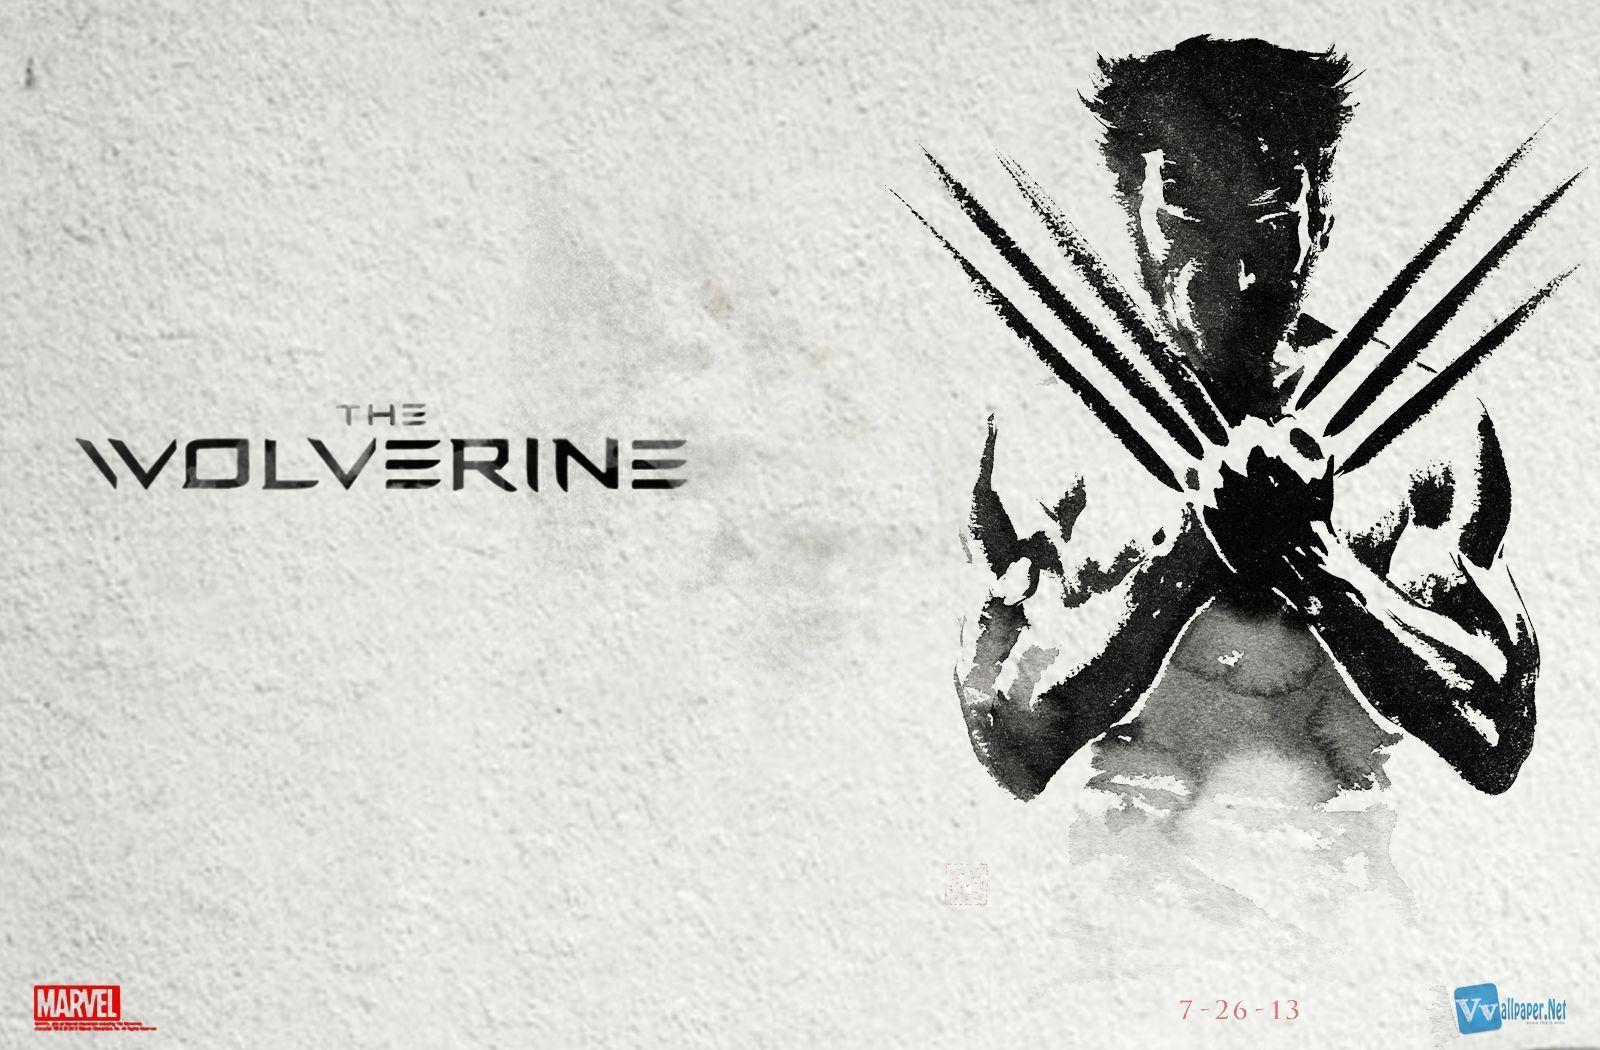 Wolverine Movie Poster Wallpaper